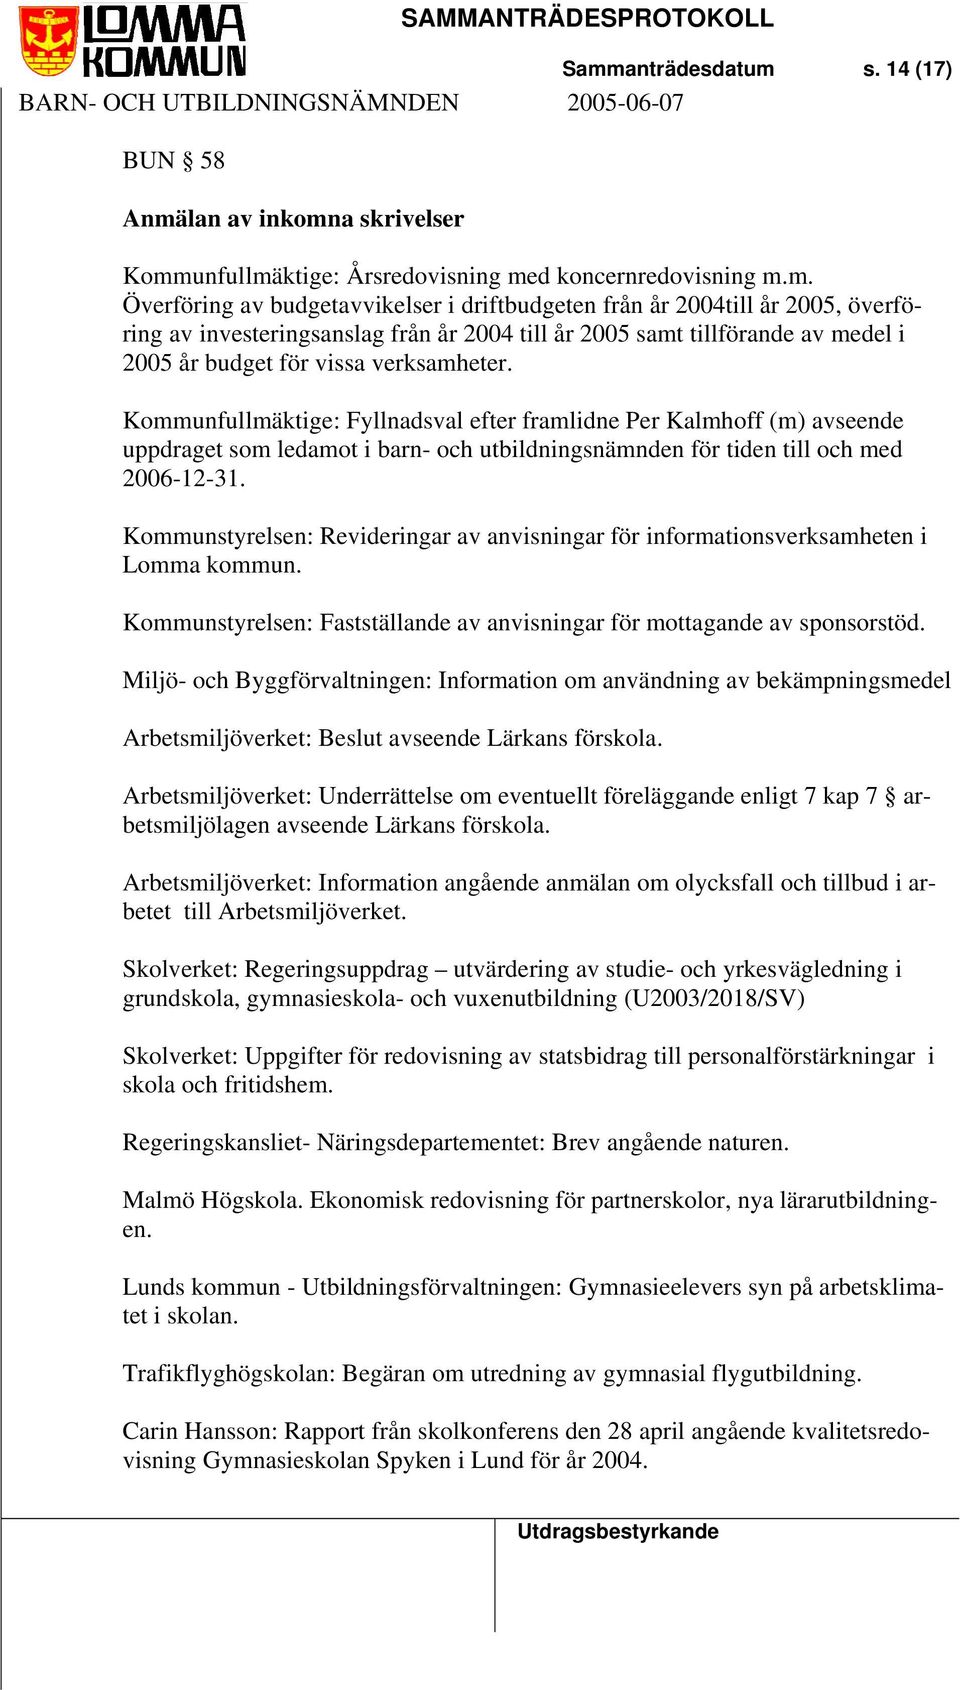 Kommunfullmäktige: Fyllnadsval efter framlidne Per Kalmhoff (m) avseende uppdraget som ledamot i barn- och utbildningsnämnden för tiden till och med 2006-12-31.